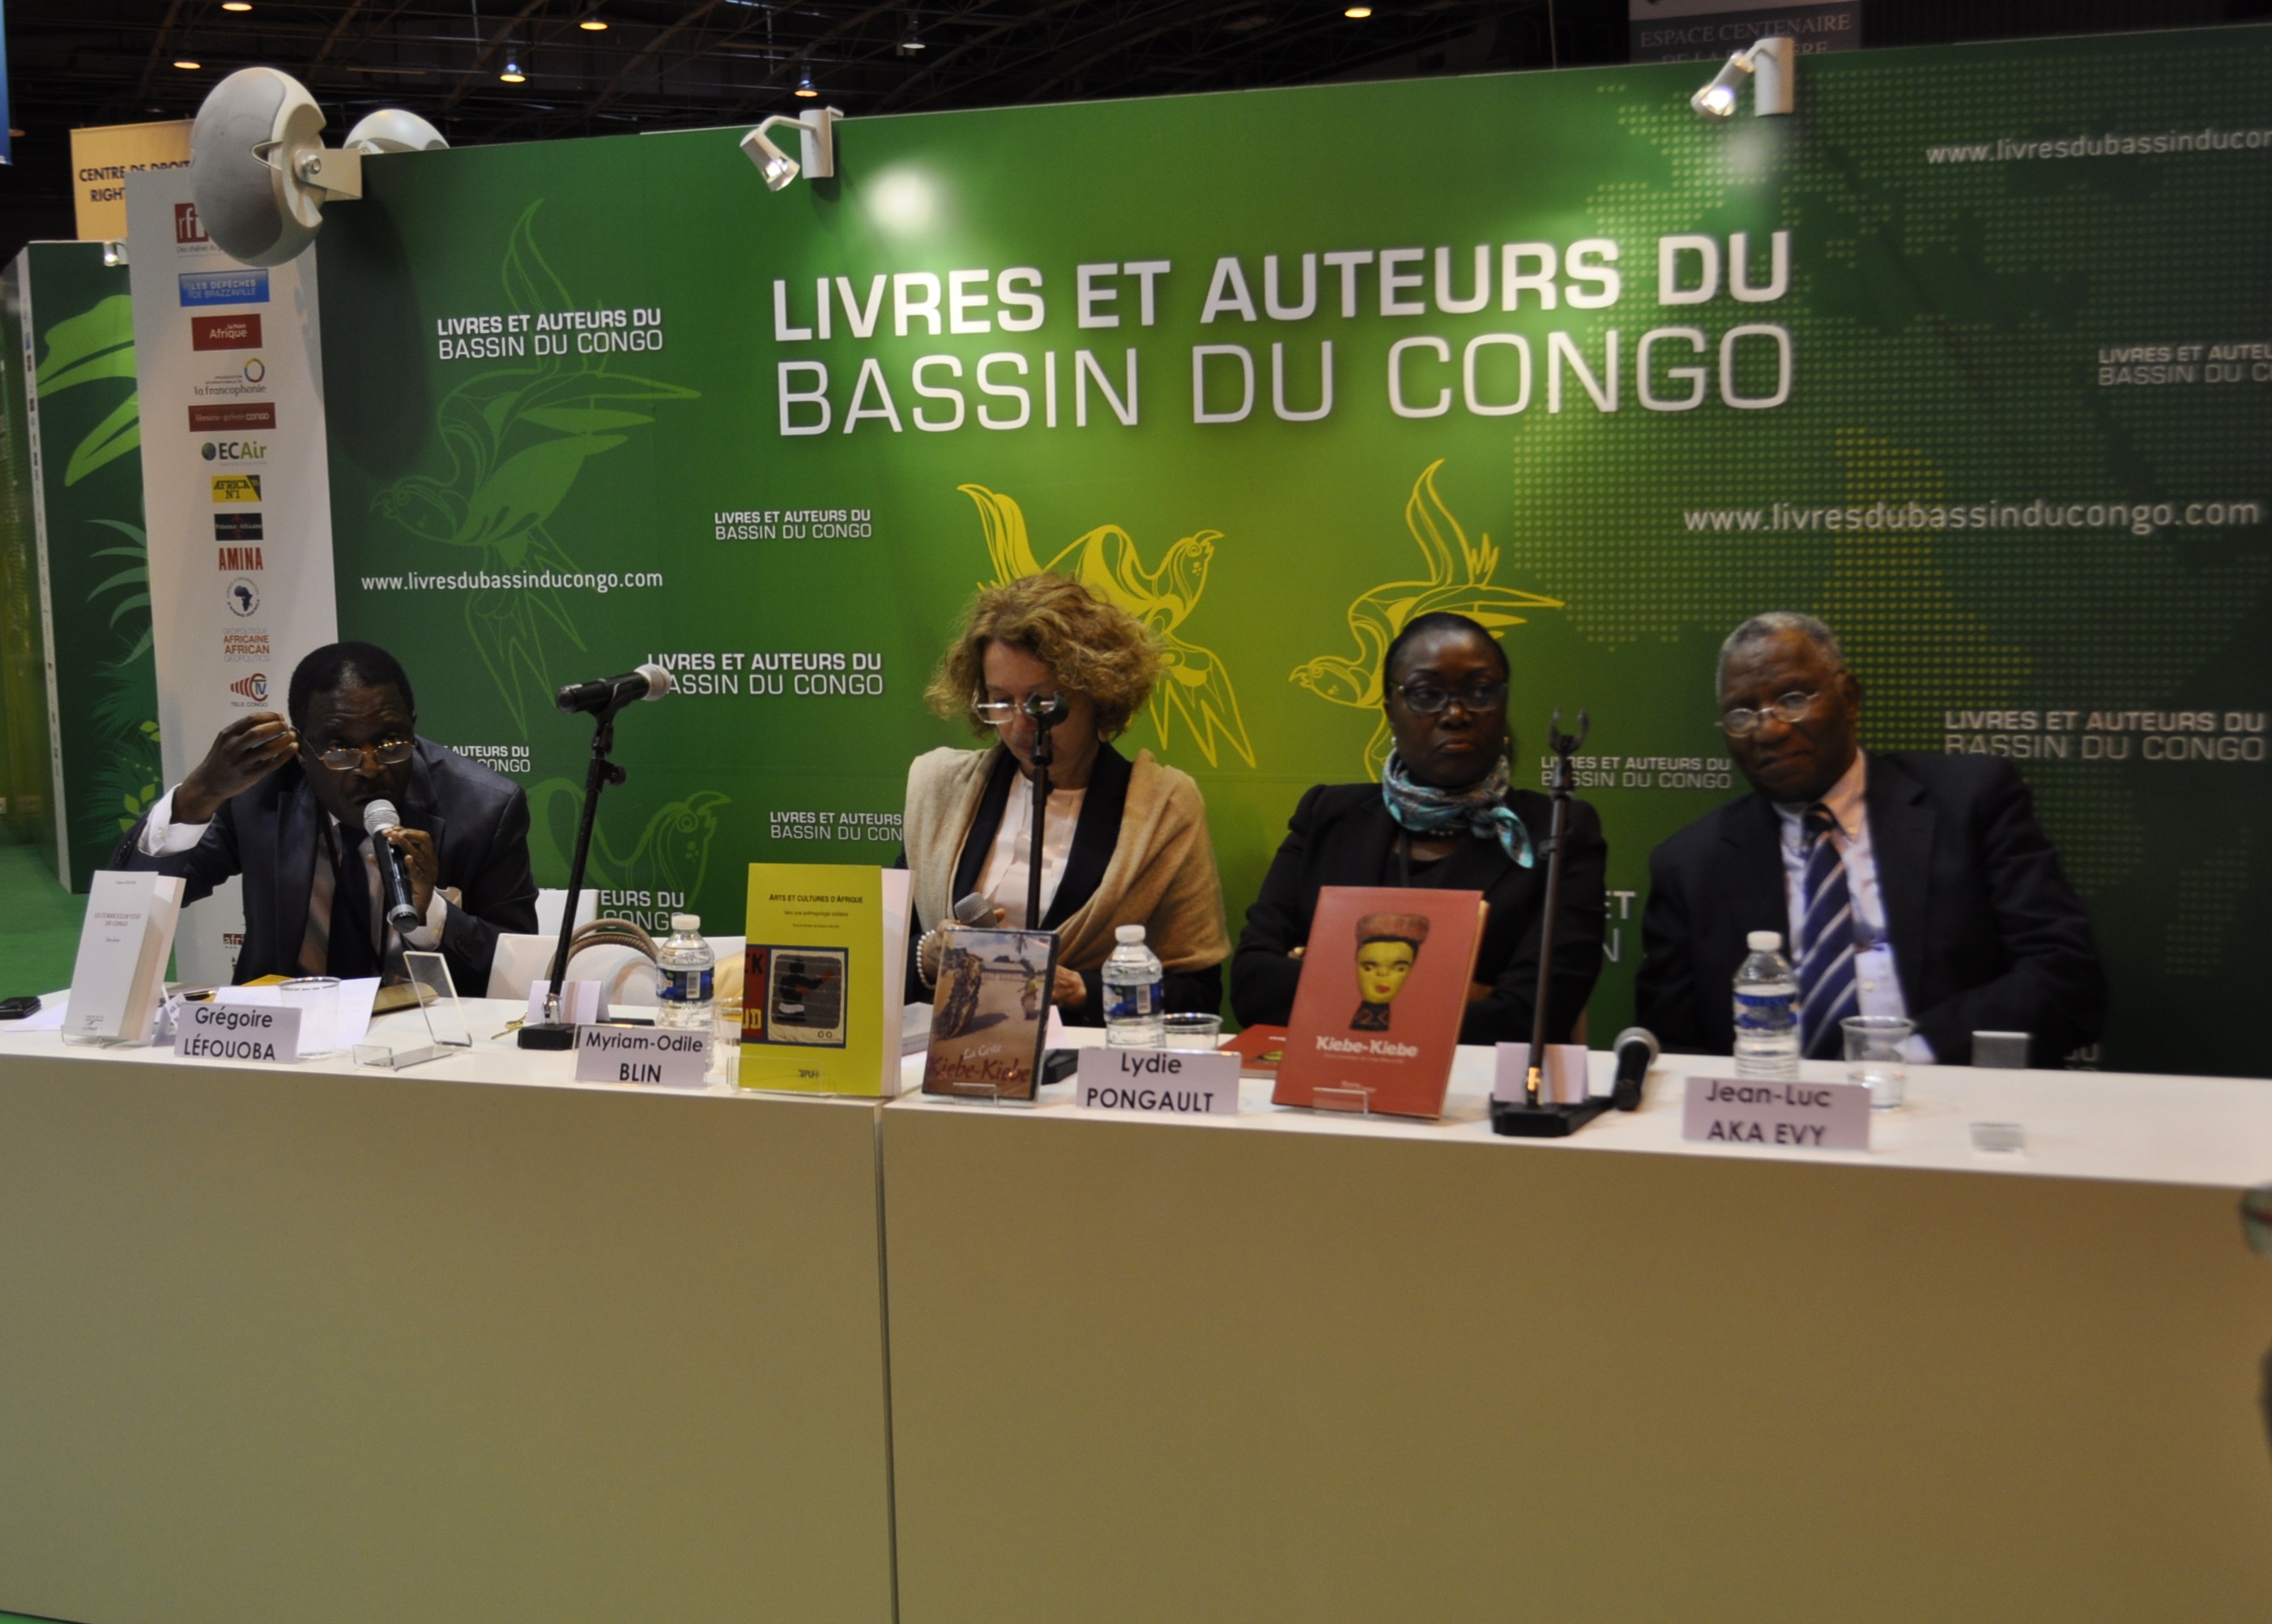 de gauche à droite Grégoire Lefouoba, Myriam-Odile Blin, Lydie Pongault et Jean-Luc Aka Evy 